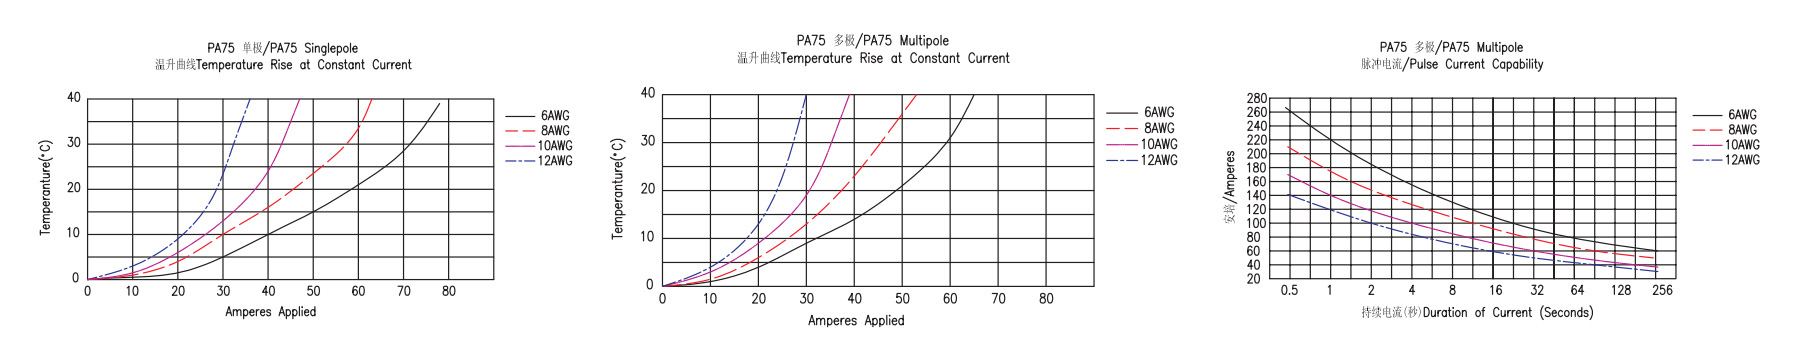 Combinación de conector de alimentación PA75-3